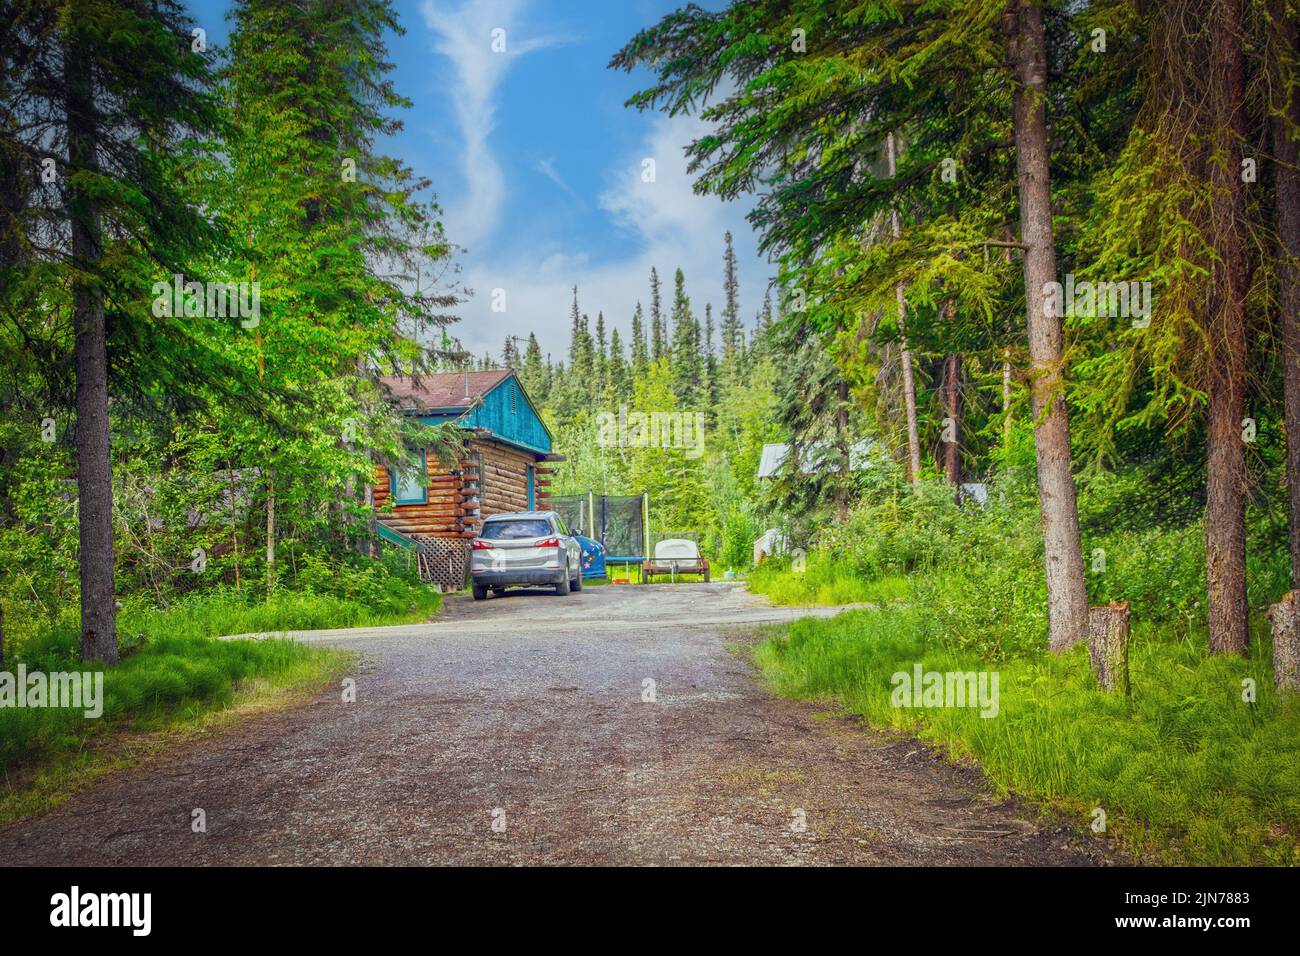 Suburbios de Fairbanks Alaska - Cabaña de madera en el bosque en los límites de la ciudad, típico de donde viven muchos residentes en esa área Foto de stock